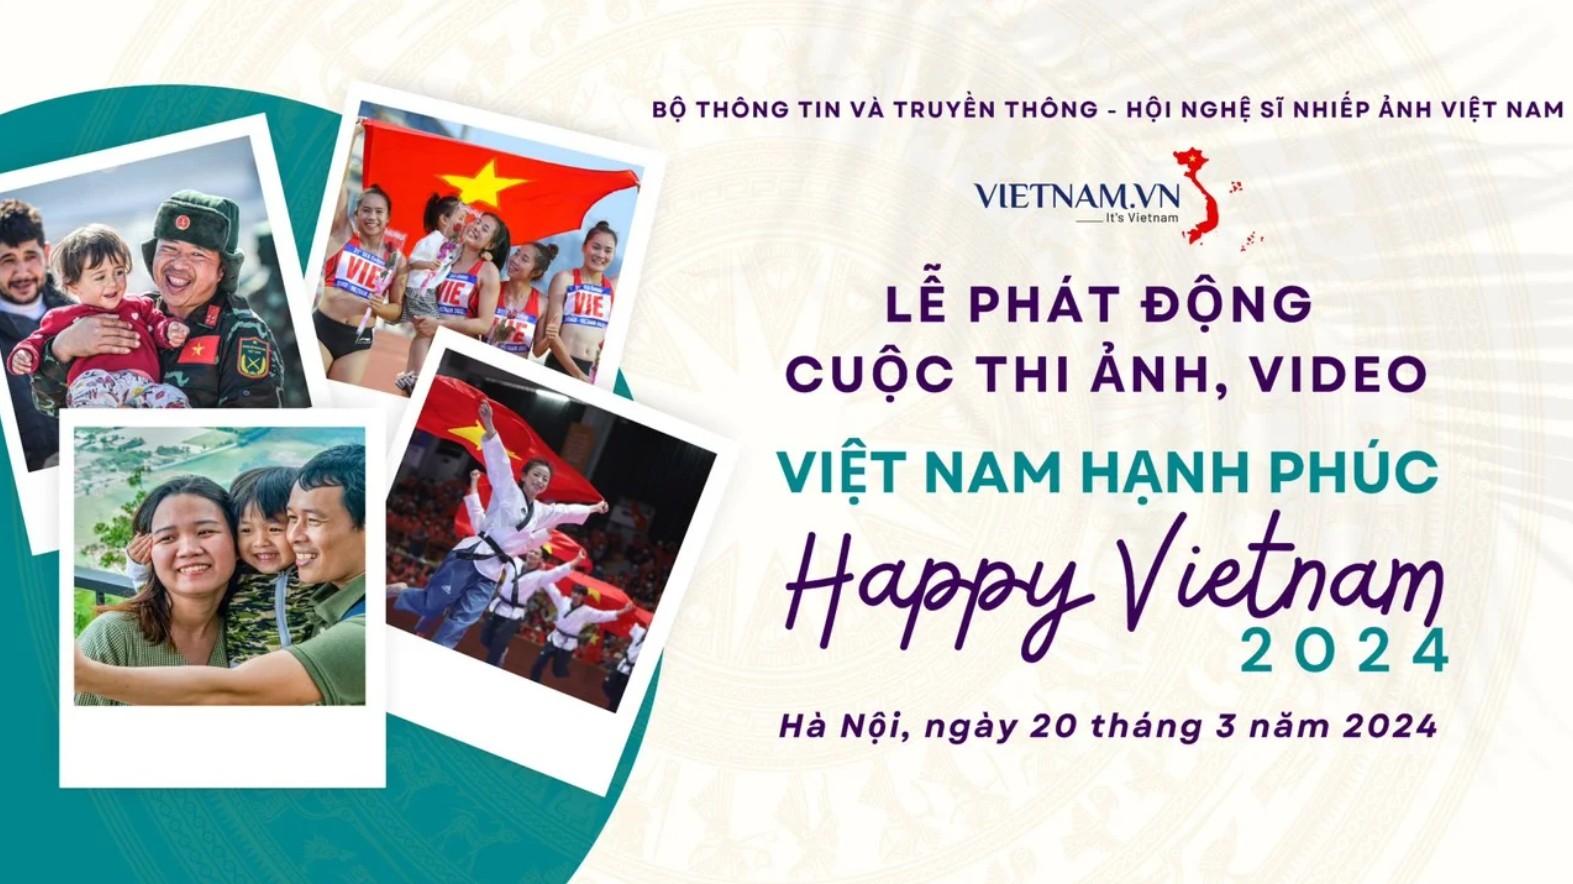 “Happy Vietnam 2024”: lan tỏa câu chuyện về một Việt Nam hạnh phúc tới thế giới